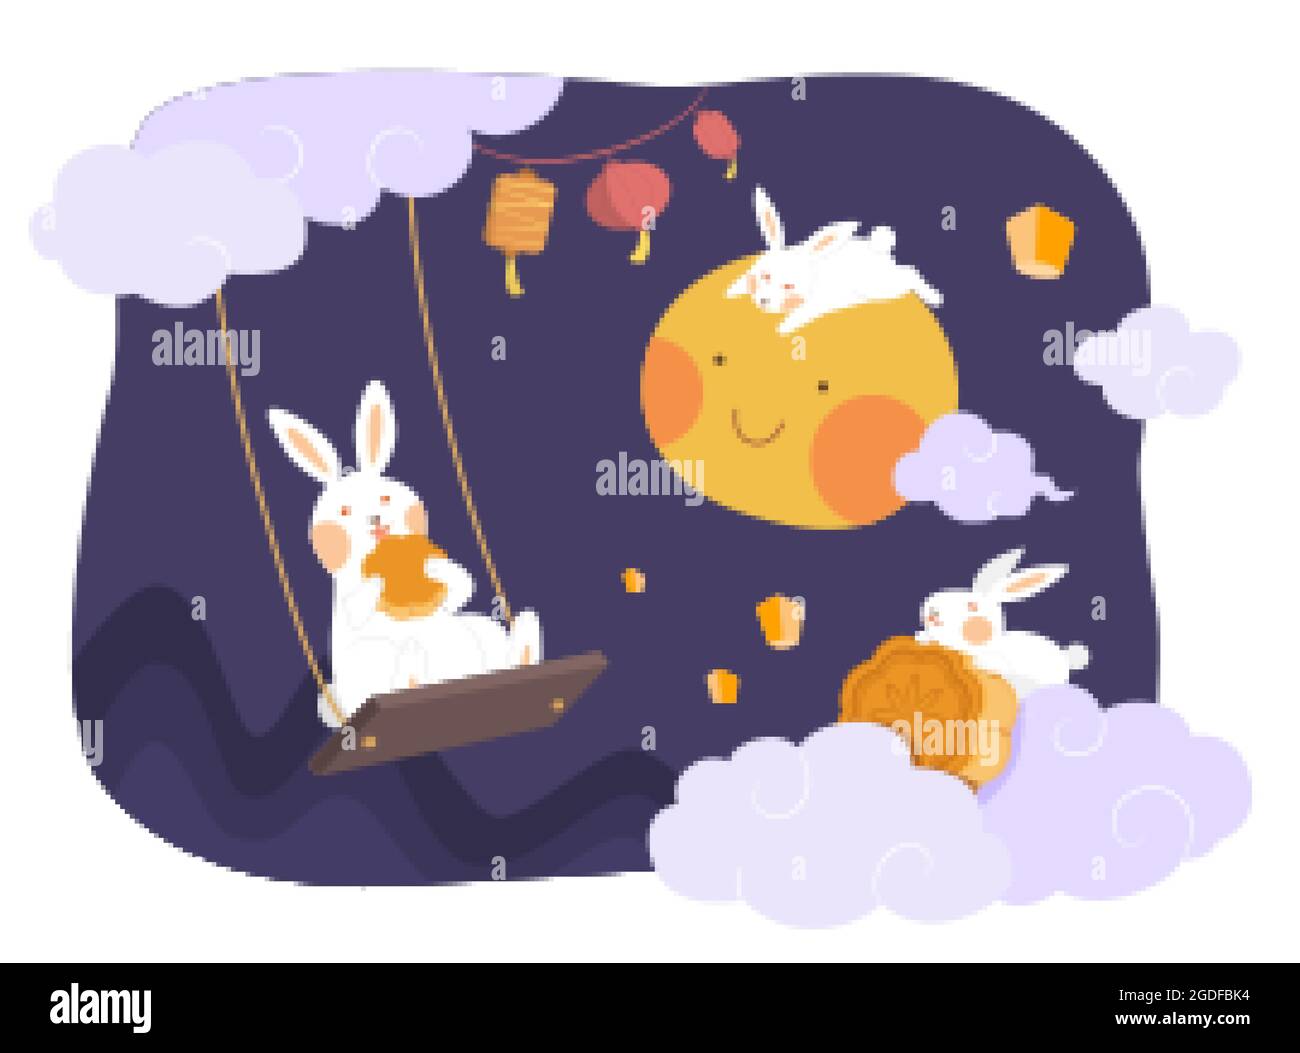 Design des Herbstfestes. Flache Illustration von Kaninchen, die am Himmel sitzen und den Mond als Feiertagsfeier gemeinsam beobachten Stock Vektor